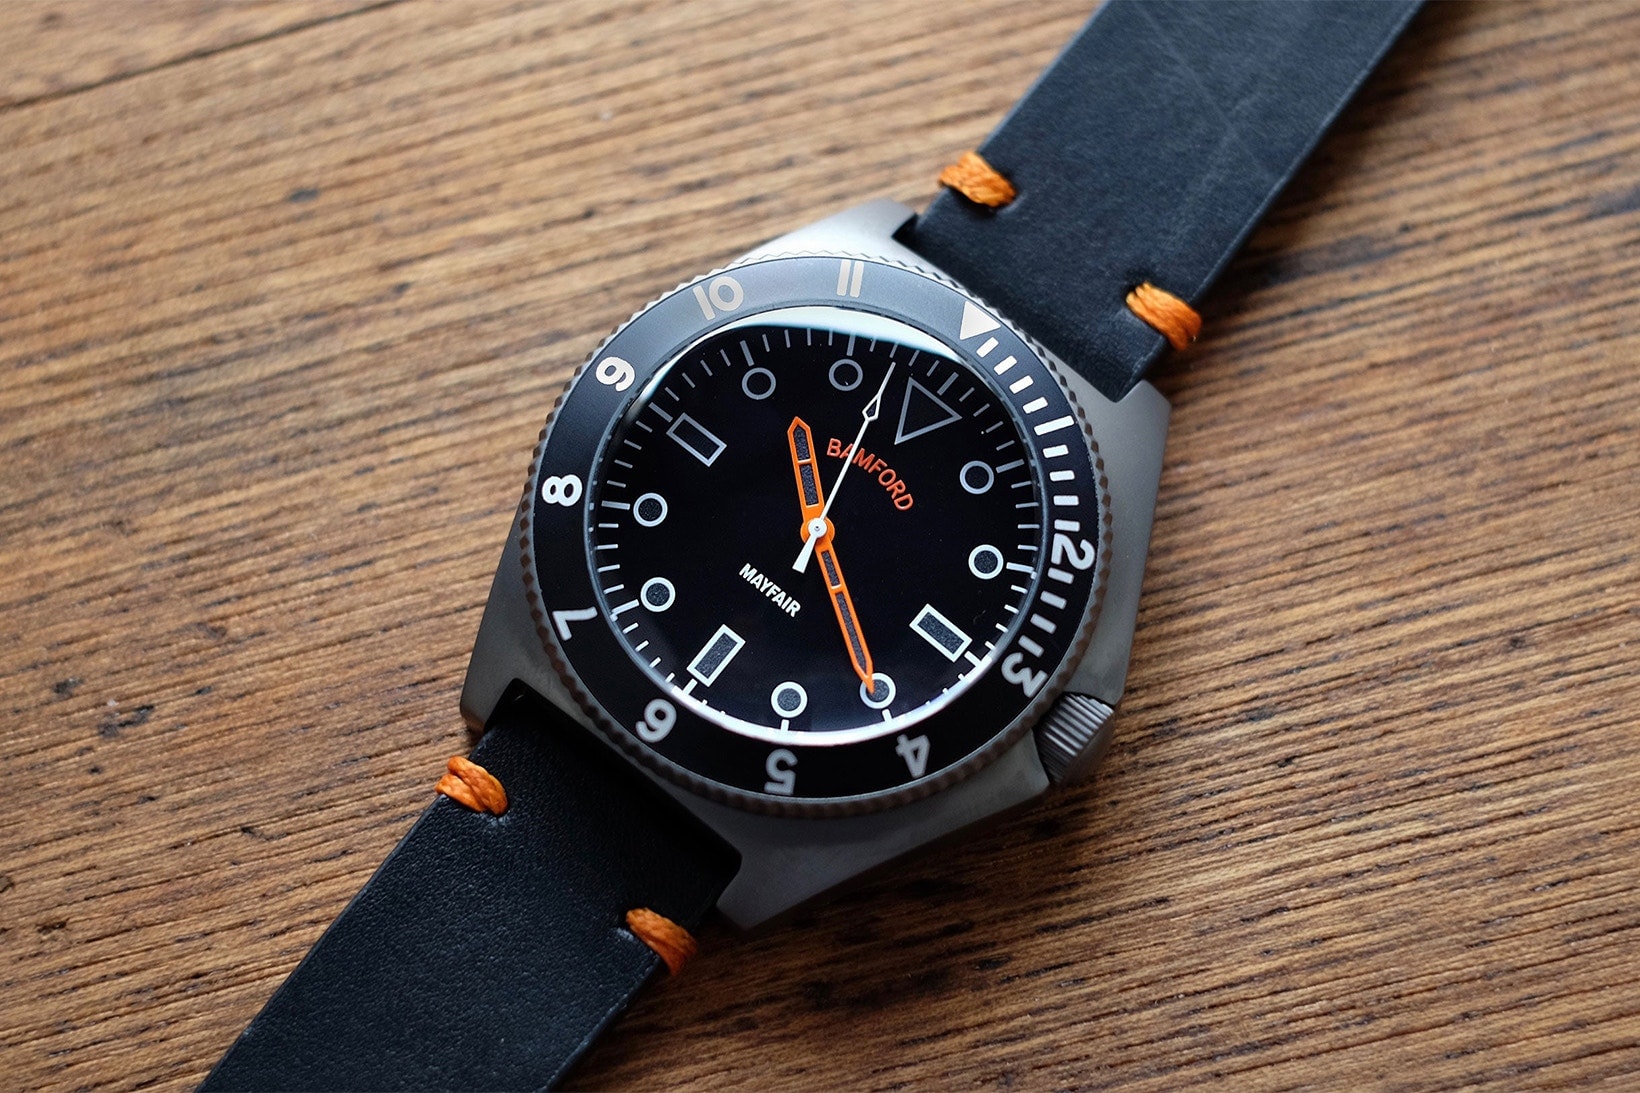 著名改錶單位 Bamford Watch Department 發佈首個自家品牌錶款「Mayfair」